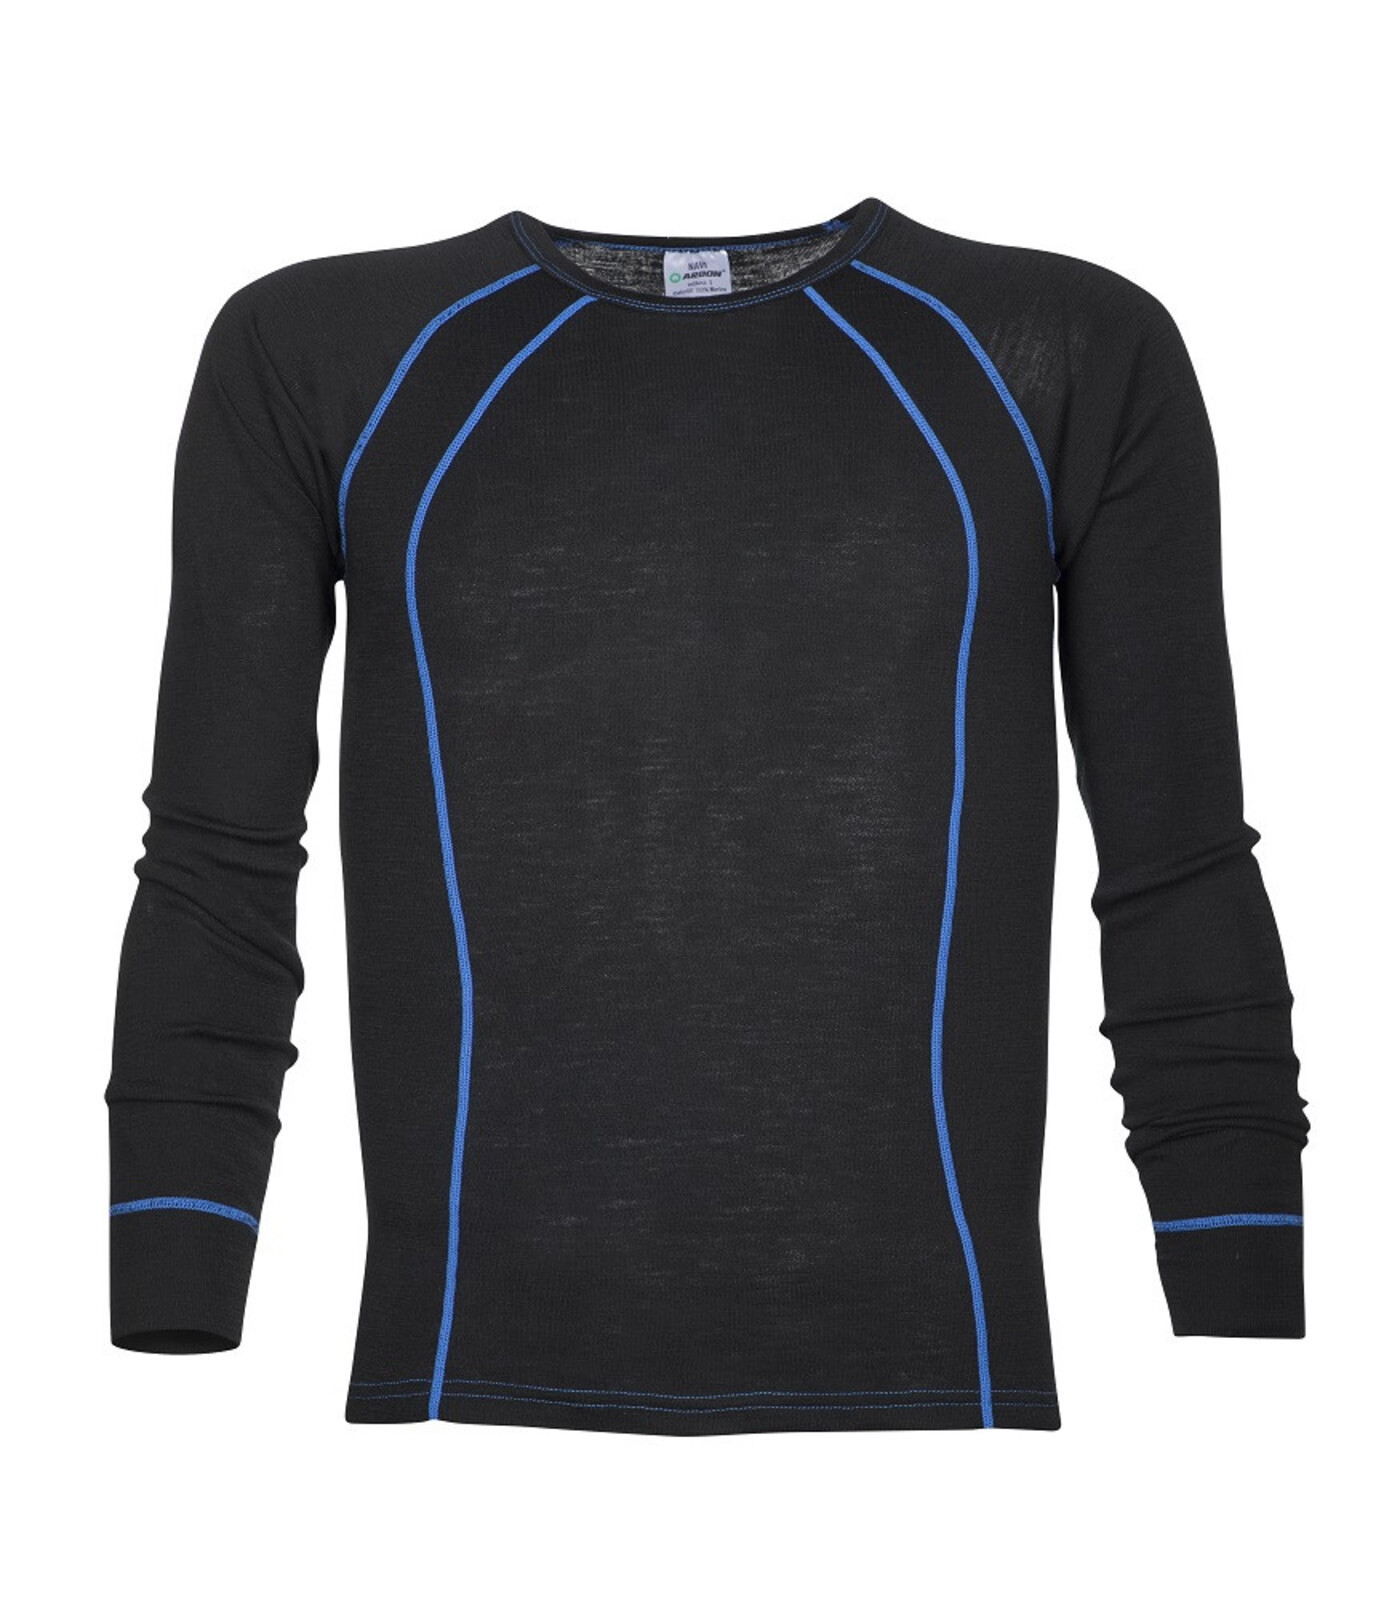 Pánske funkčné merino tričko s dlhým rukávom Ardon Navi - veľkosť: XXL, farba: čierna/modrá